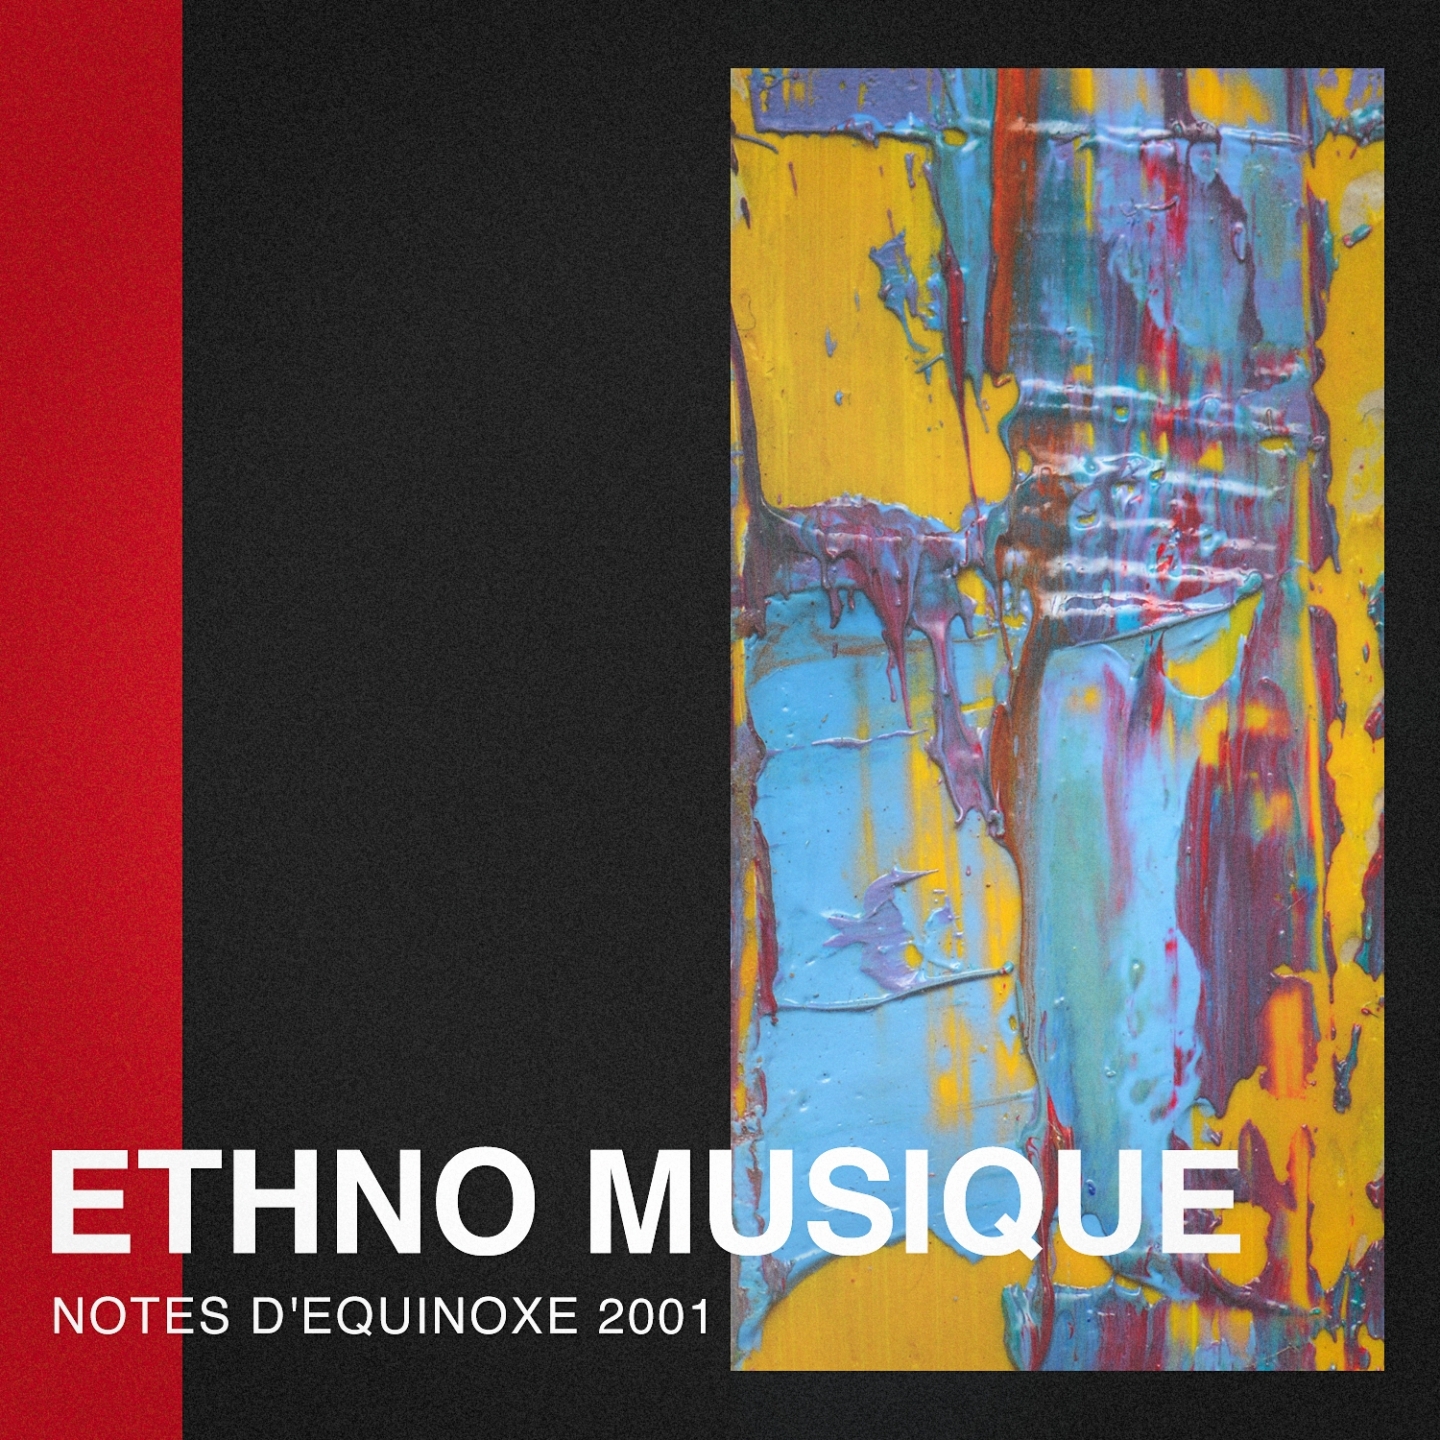 Ethno Musique: Notes D'e quinoxe 2001